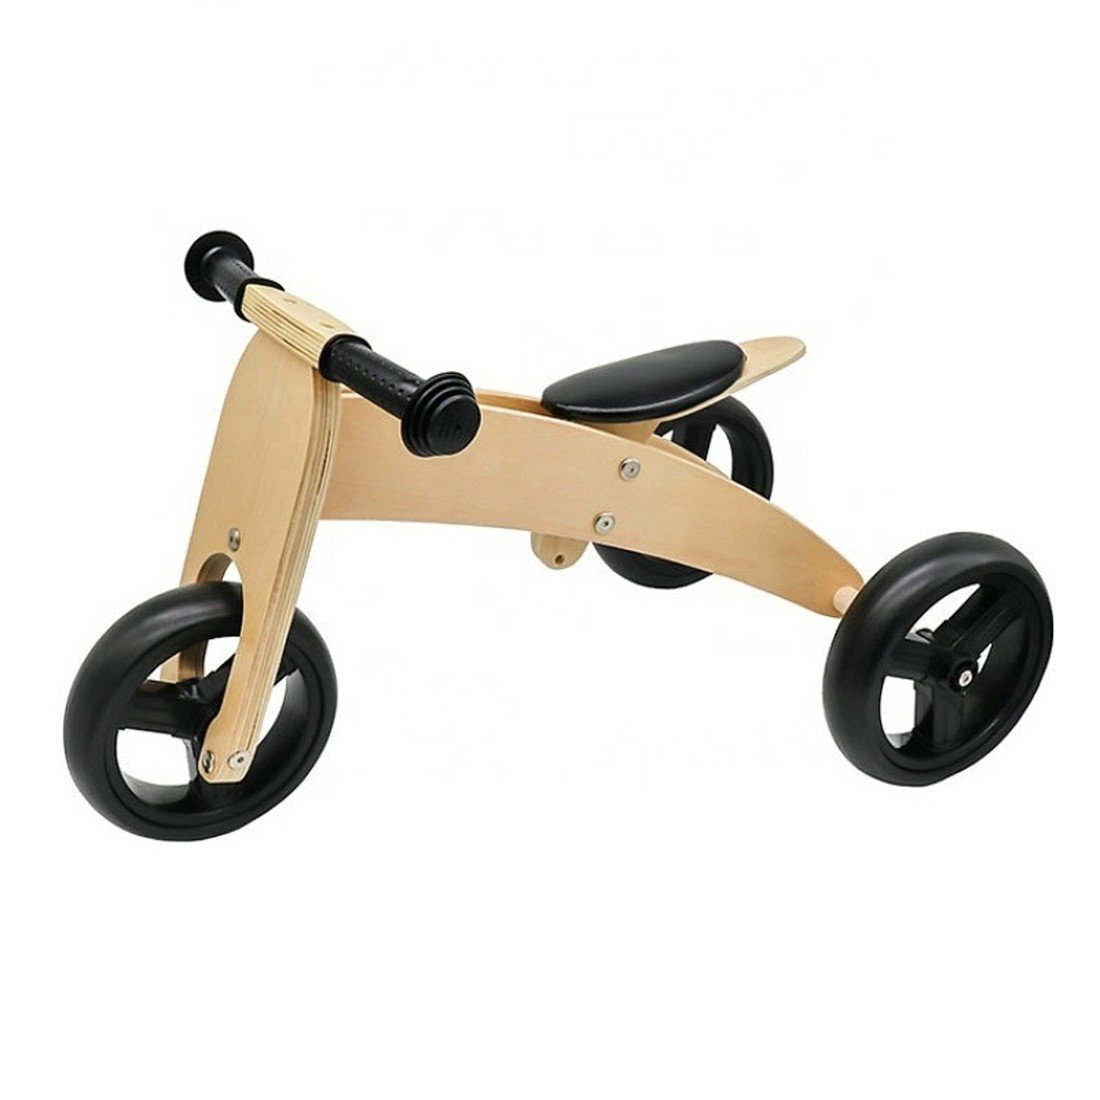 BAZAR - Dřevěná tříkolka Trike 2v1 Wooden tricycle 2in1